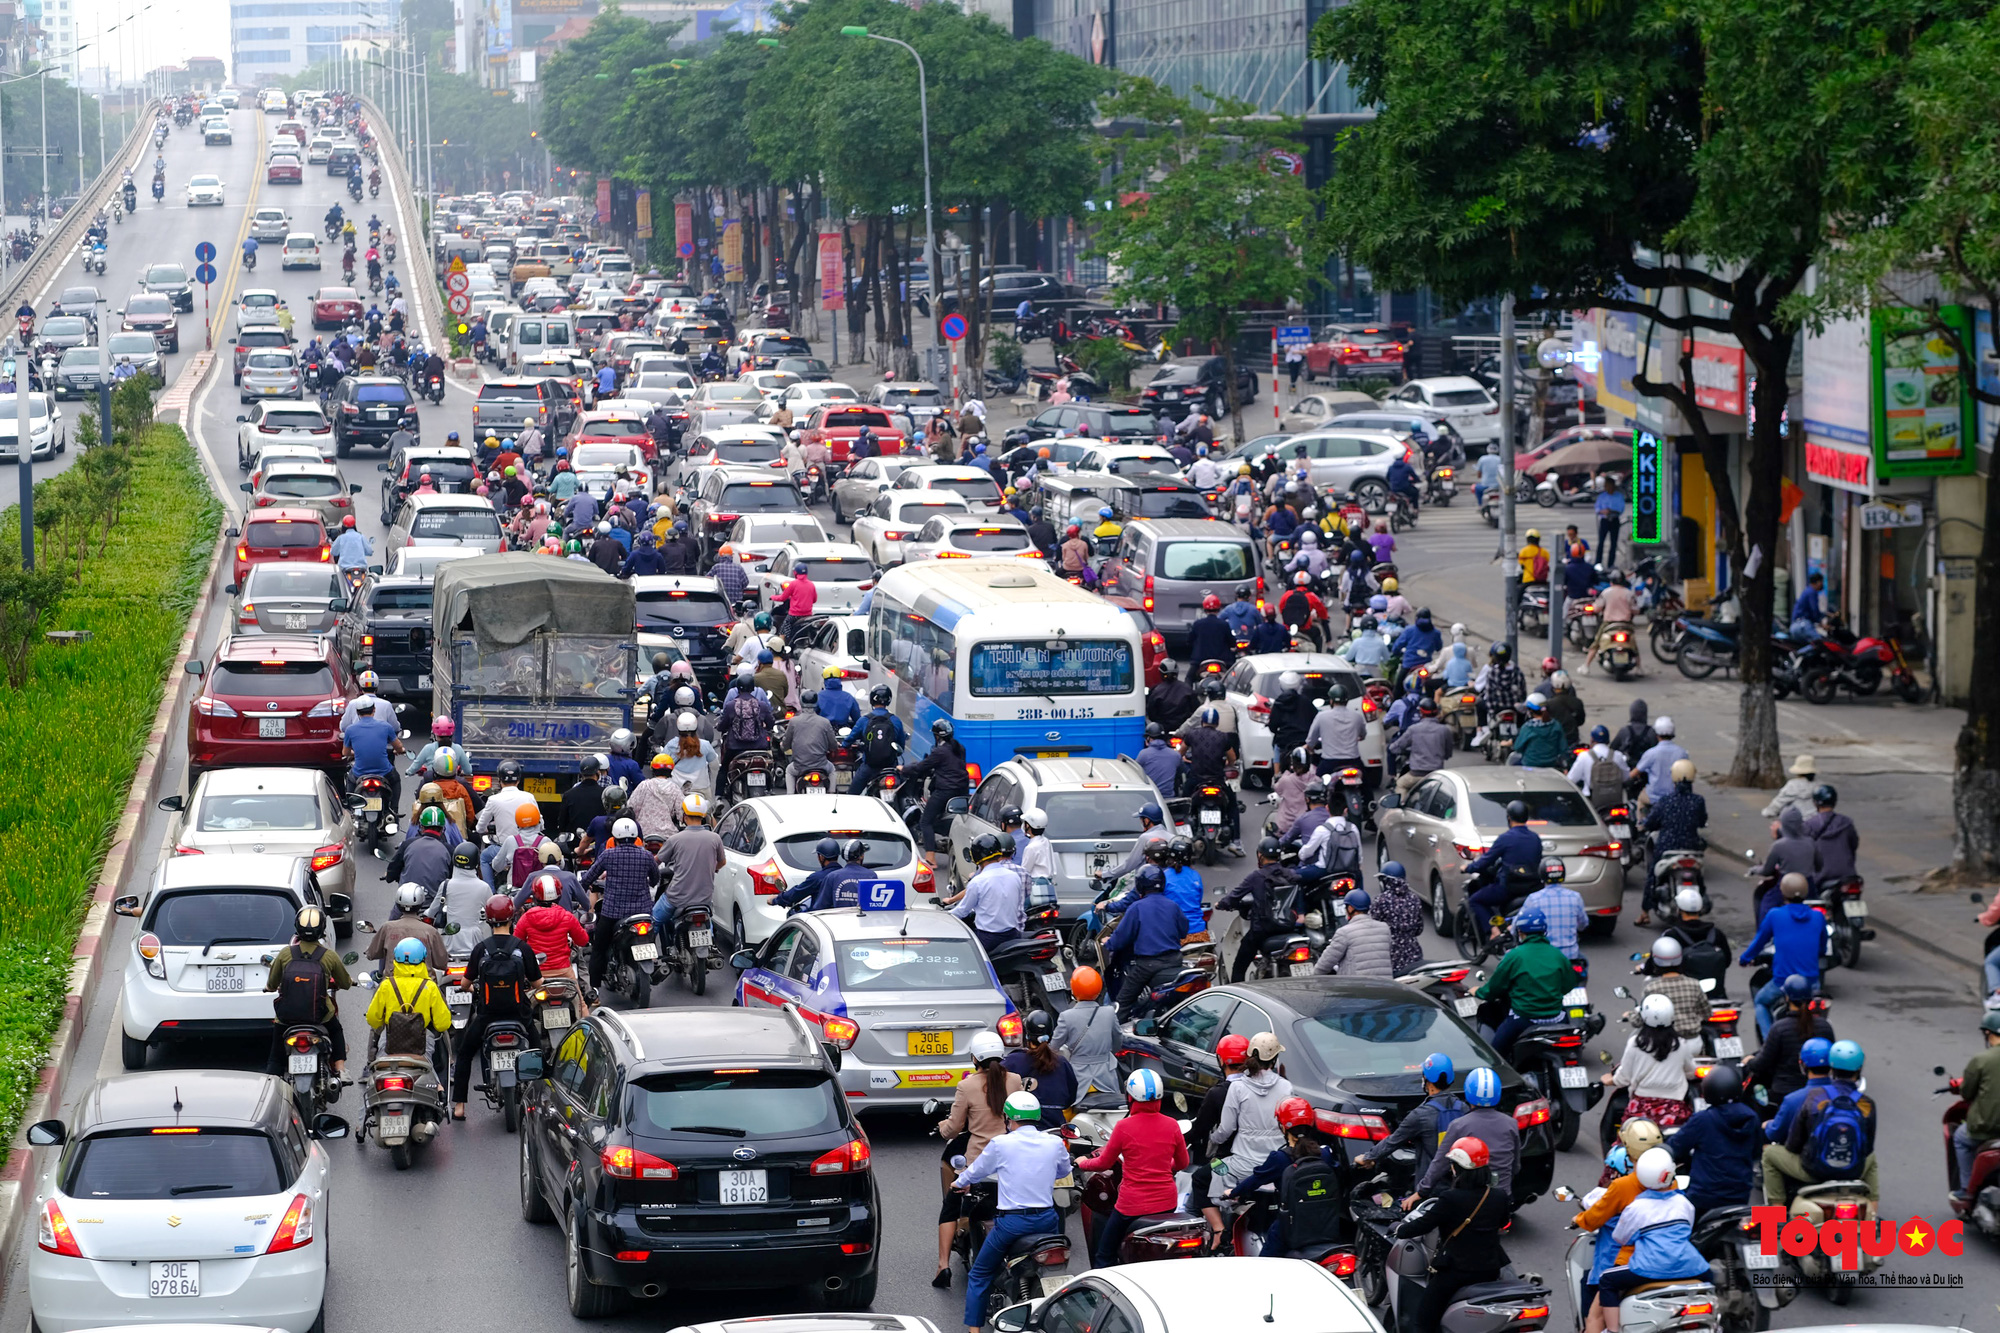 Hà Nội: Giao thông thủ đô kẹt cứng ngày đầu người dân đi làm sau nghỉ lễ Giỗ Tổ - Ảnh 17.